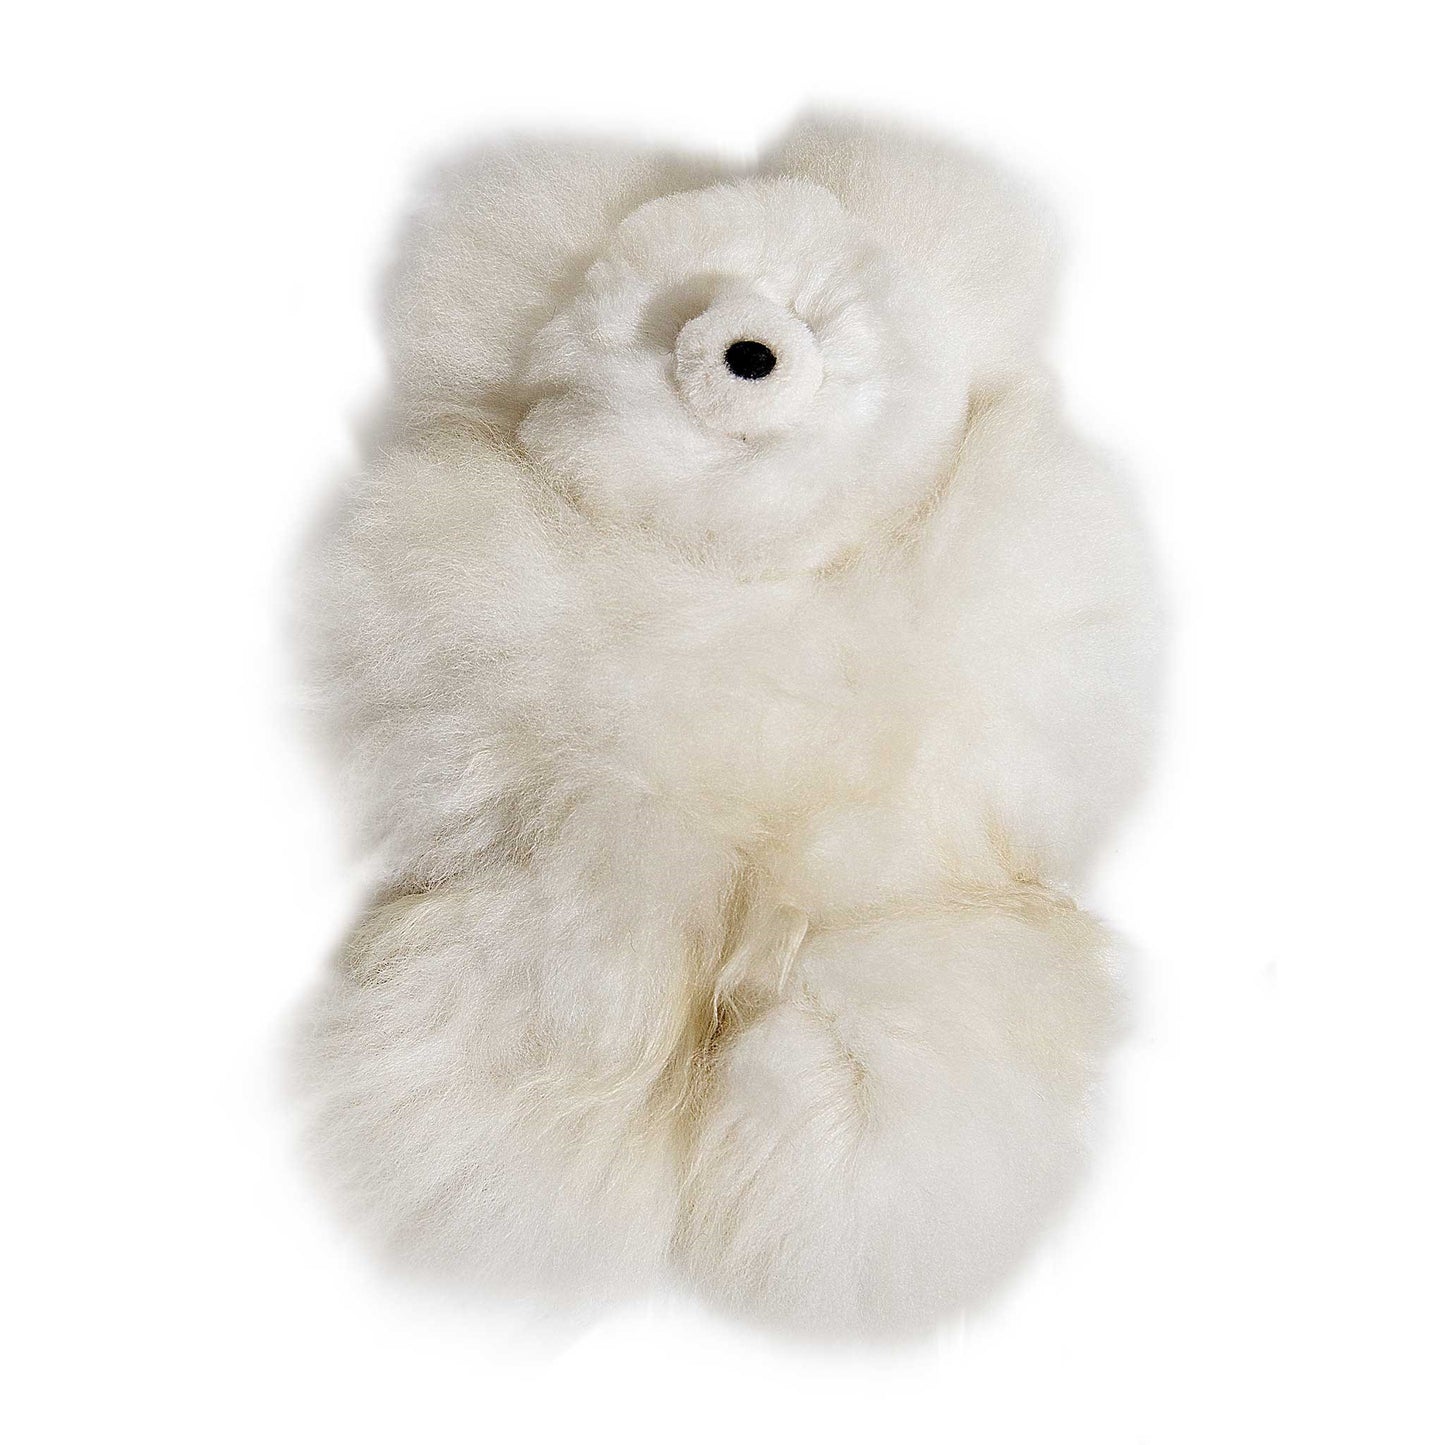 Alpaca Wool Stuffed Animals - Teddy Bear